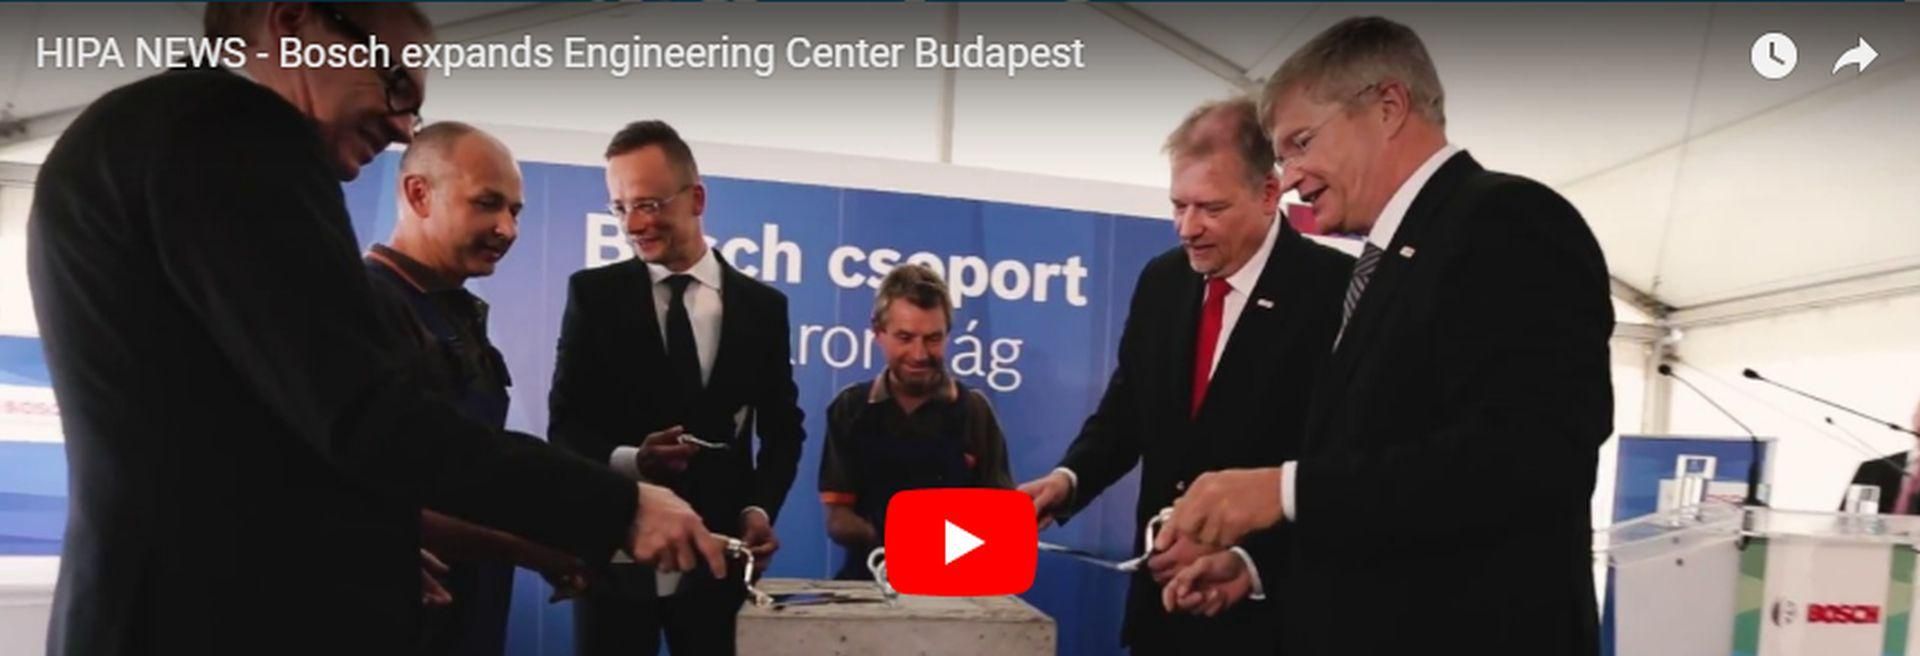 Bővíti második legnagyobb európai fejlesztési központját a Bosch - VIDEÓ RIPORT